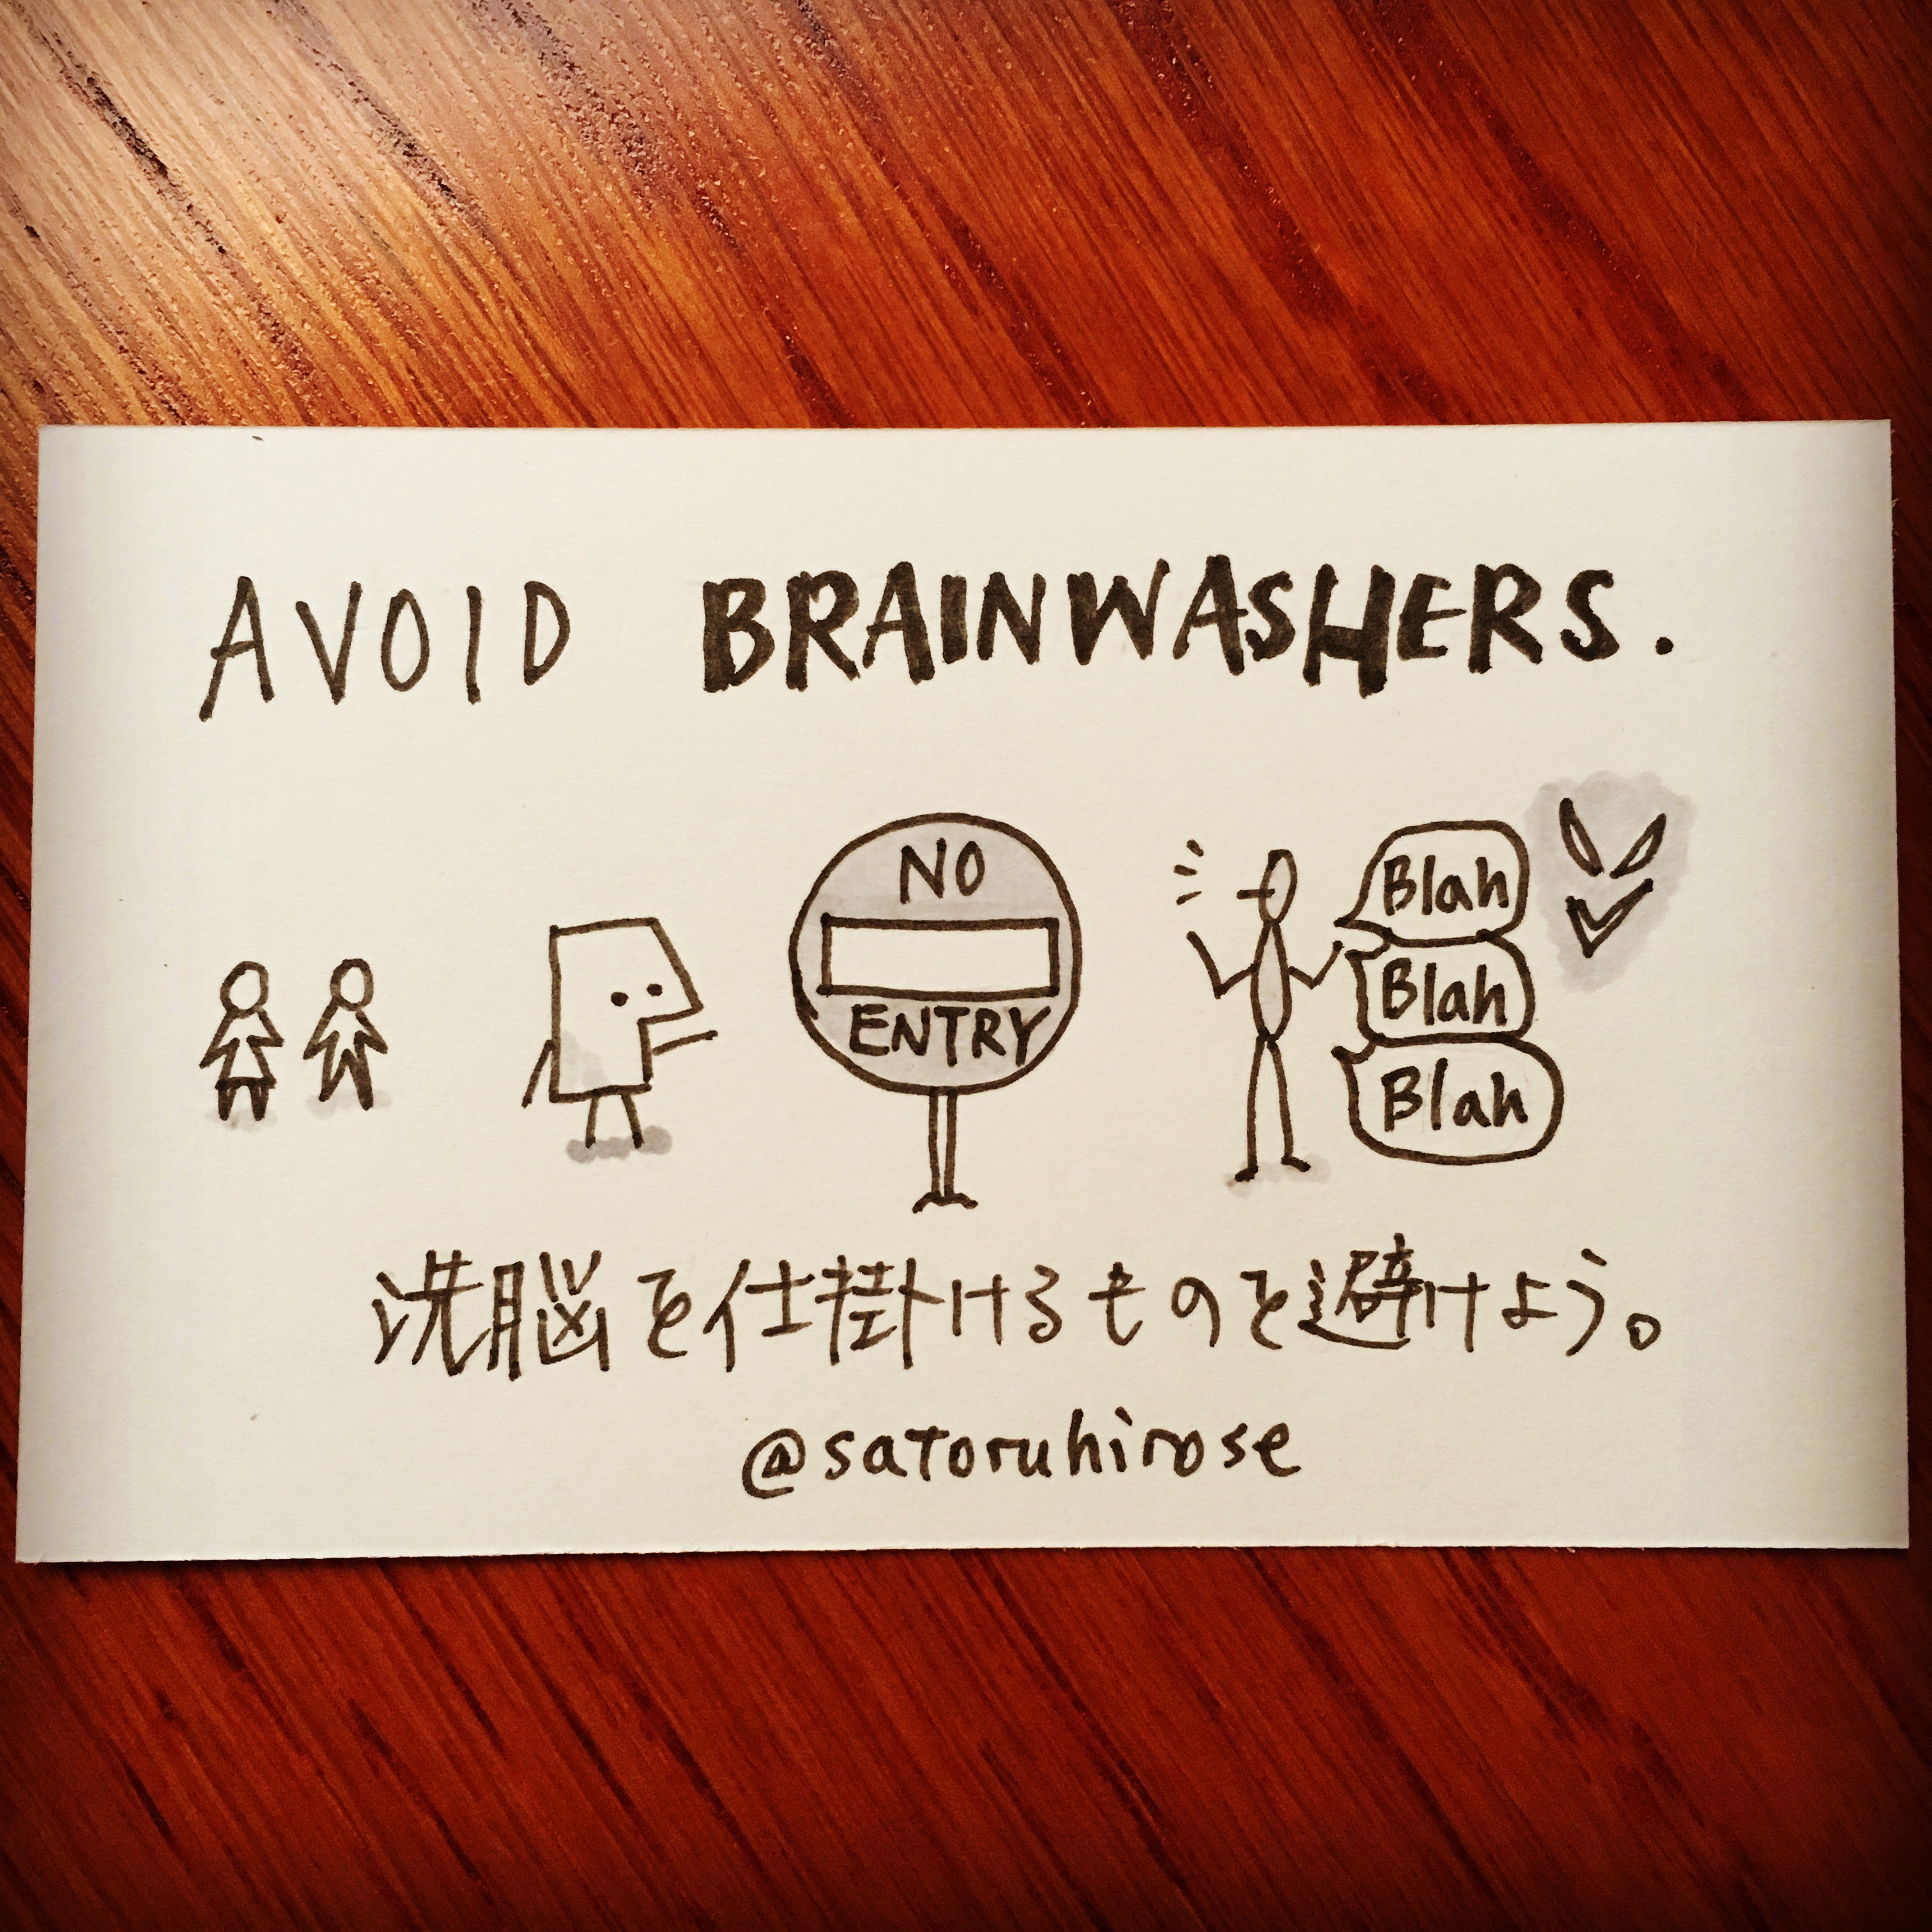 Avoid brainwashers.